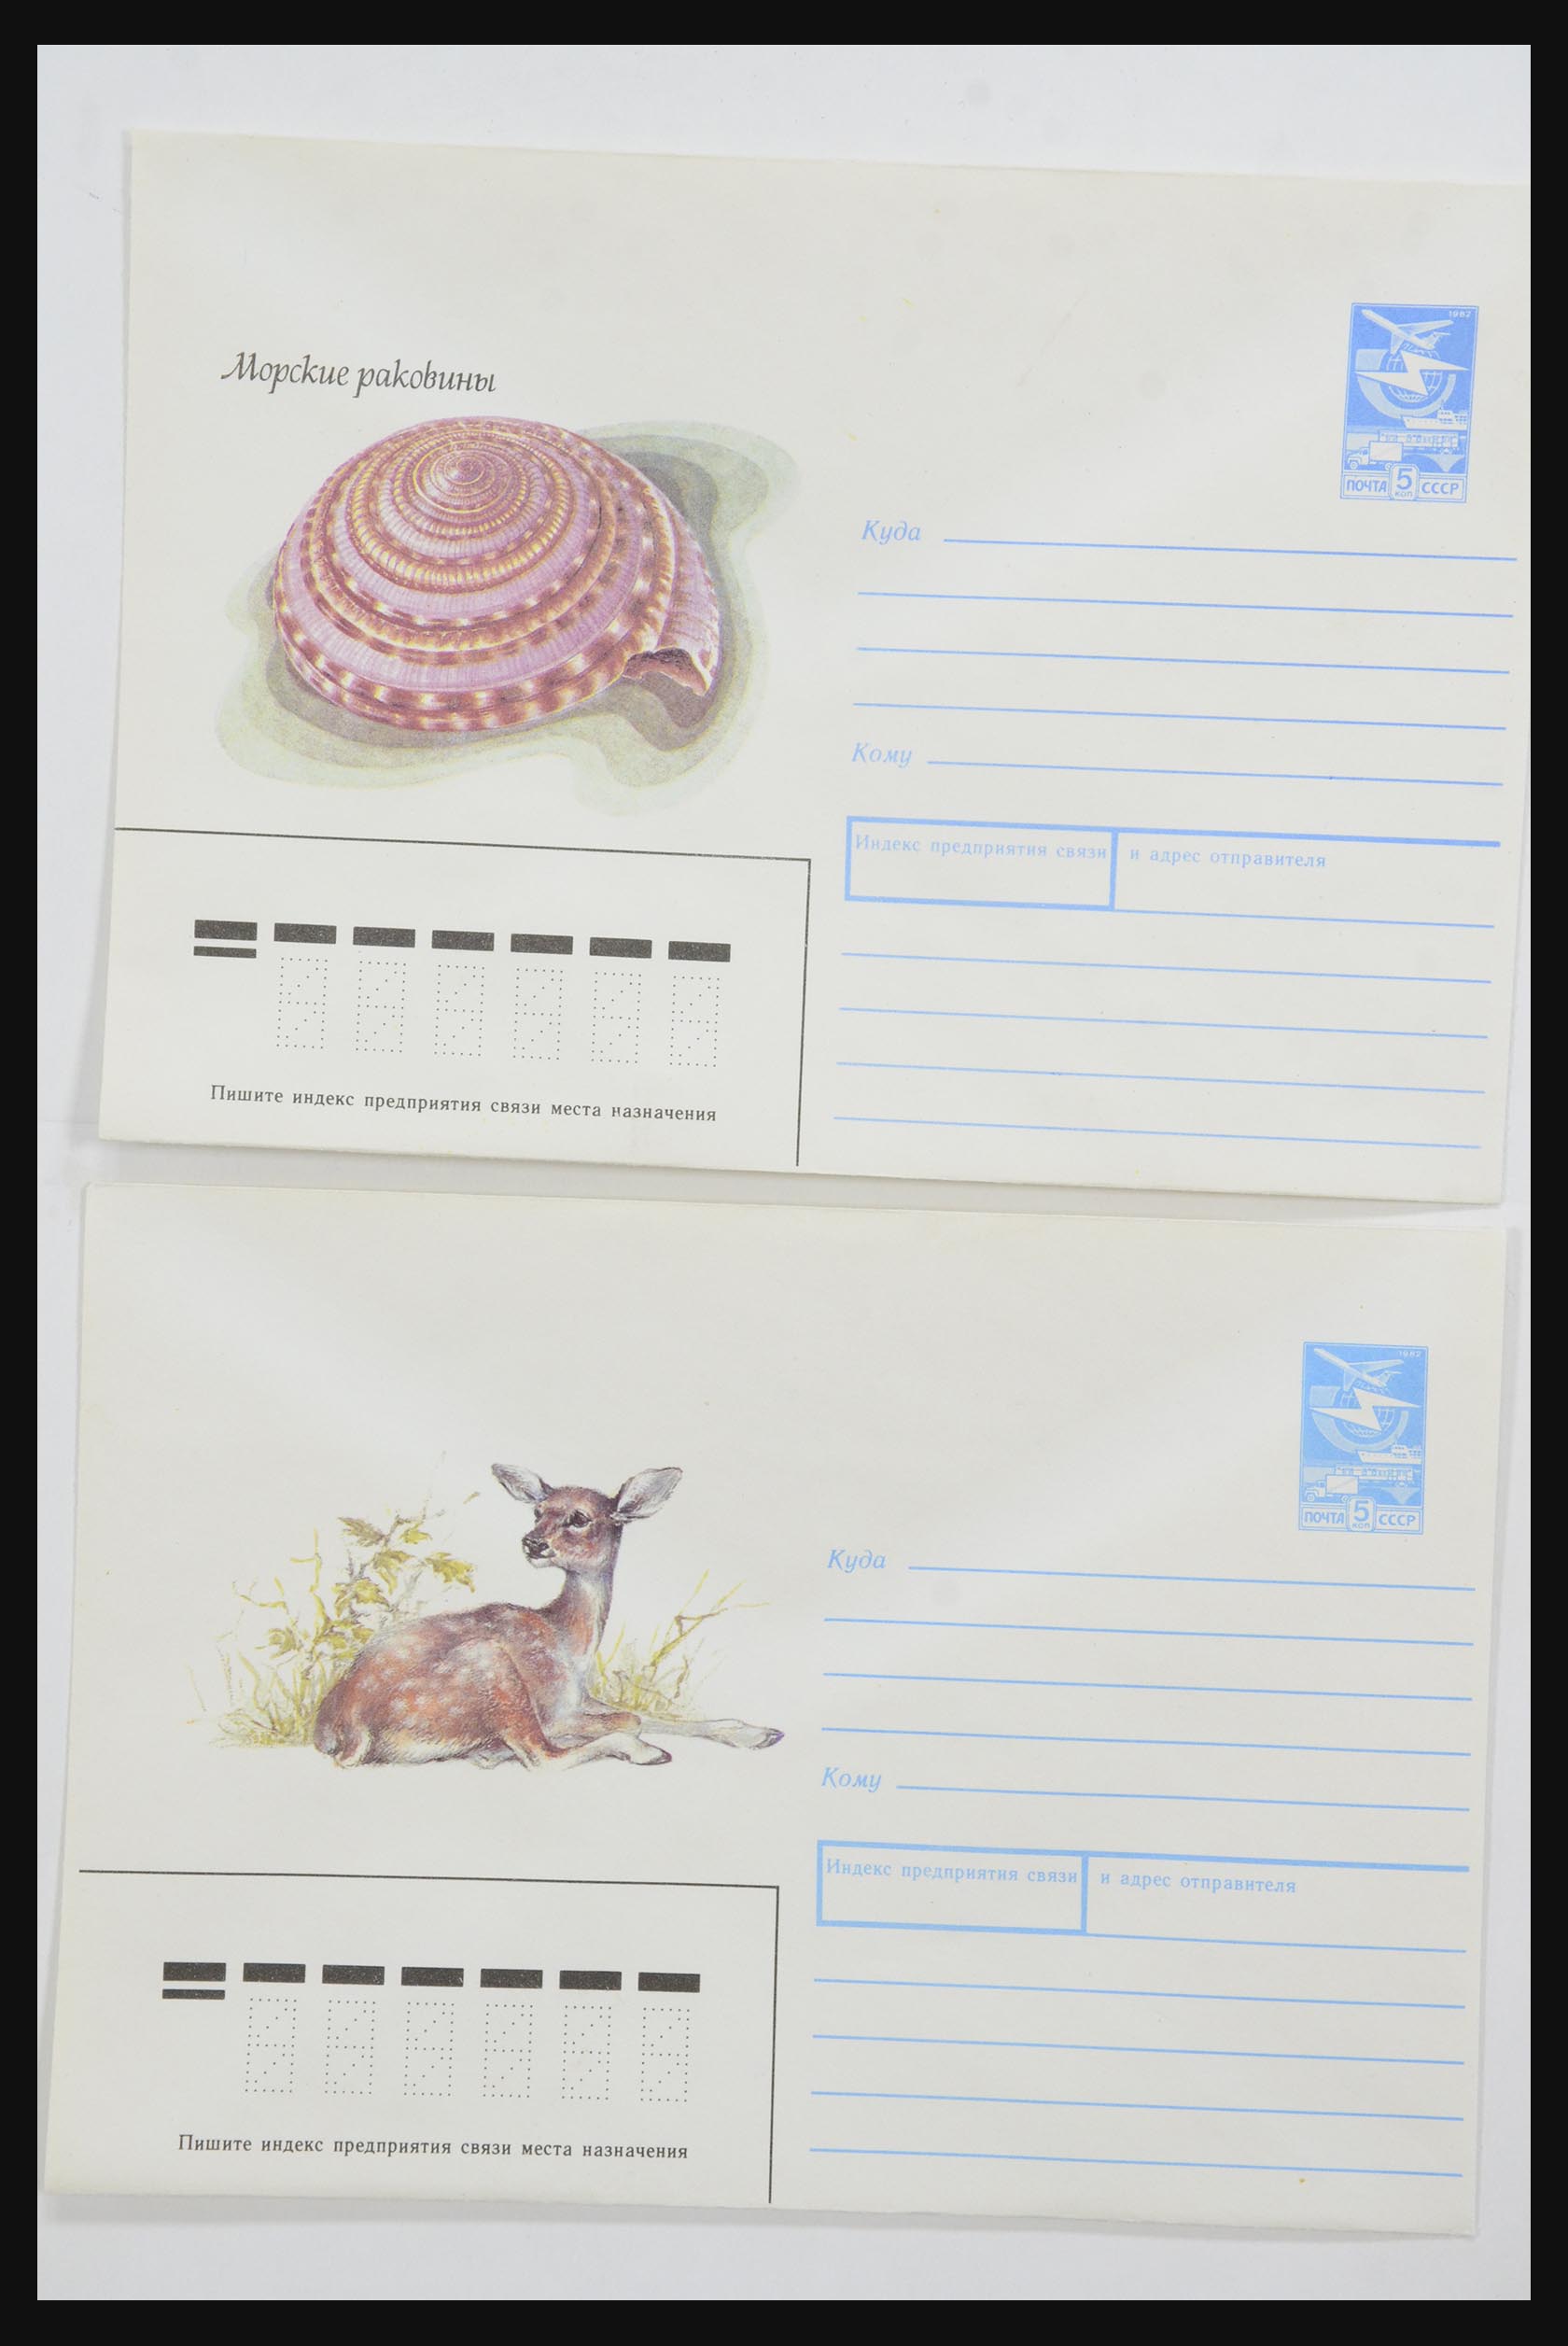 31928 0036 - 31928 Oost Europa brieven jaren 60/90.